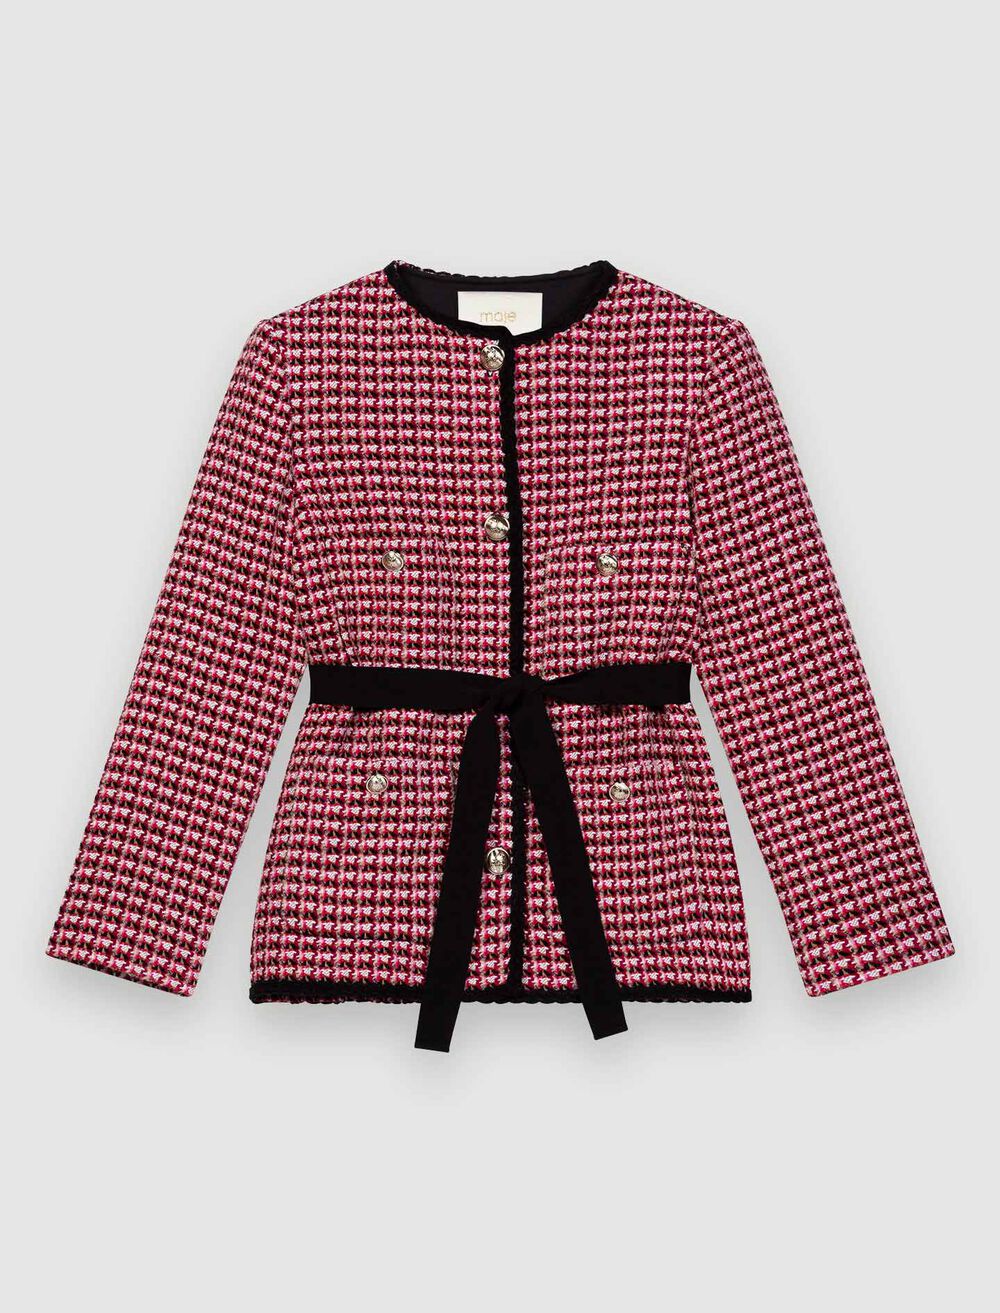 120VENALT Contrast tweed jacket - Coats & Jackets - Maje.com